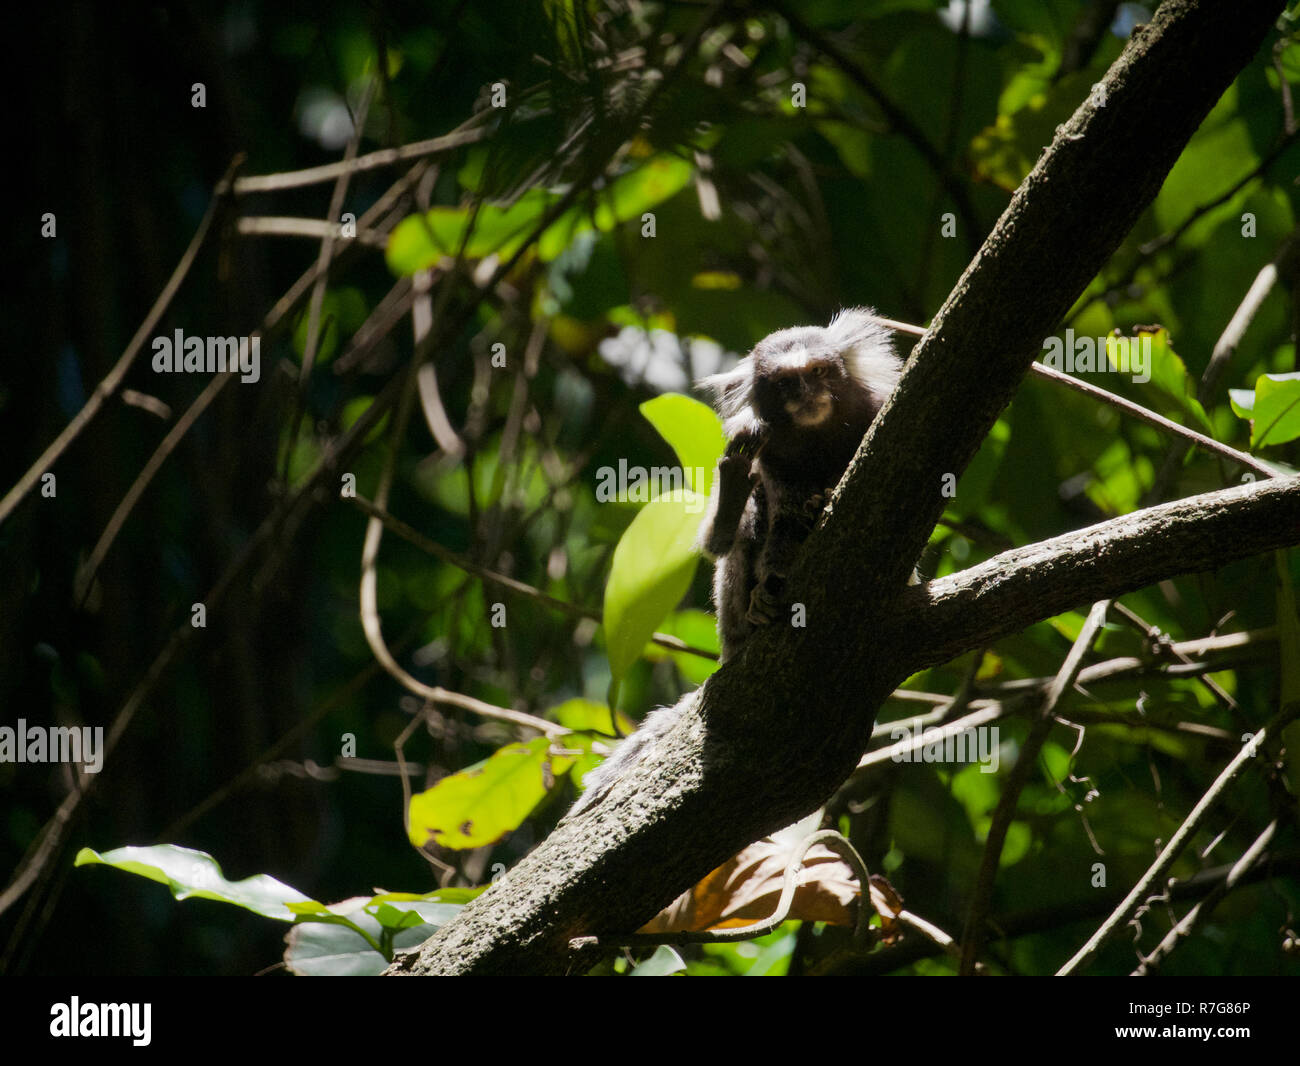 Common Marmoset erscheint in die Kamera zu winken. Aus der Ferne tief in einem tropischen Regenwald in Brasilien übernommen. Stockfoto